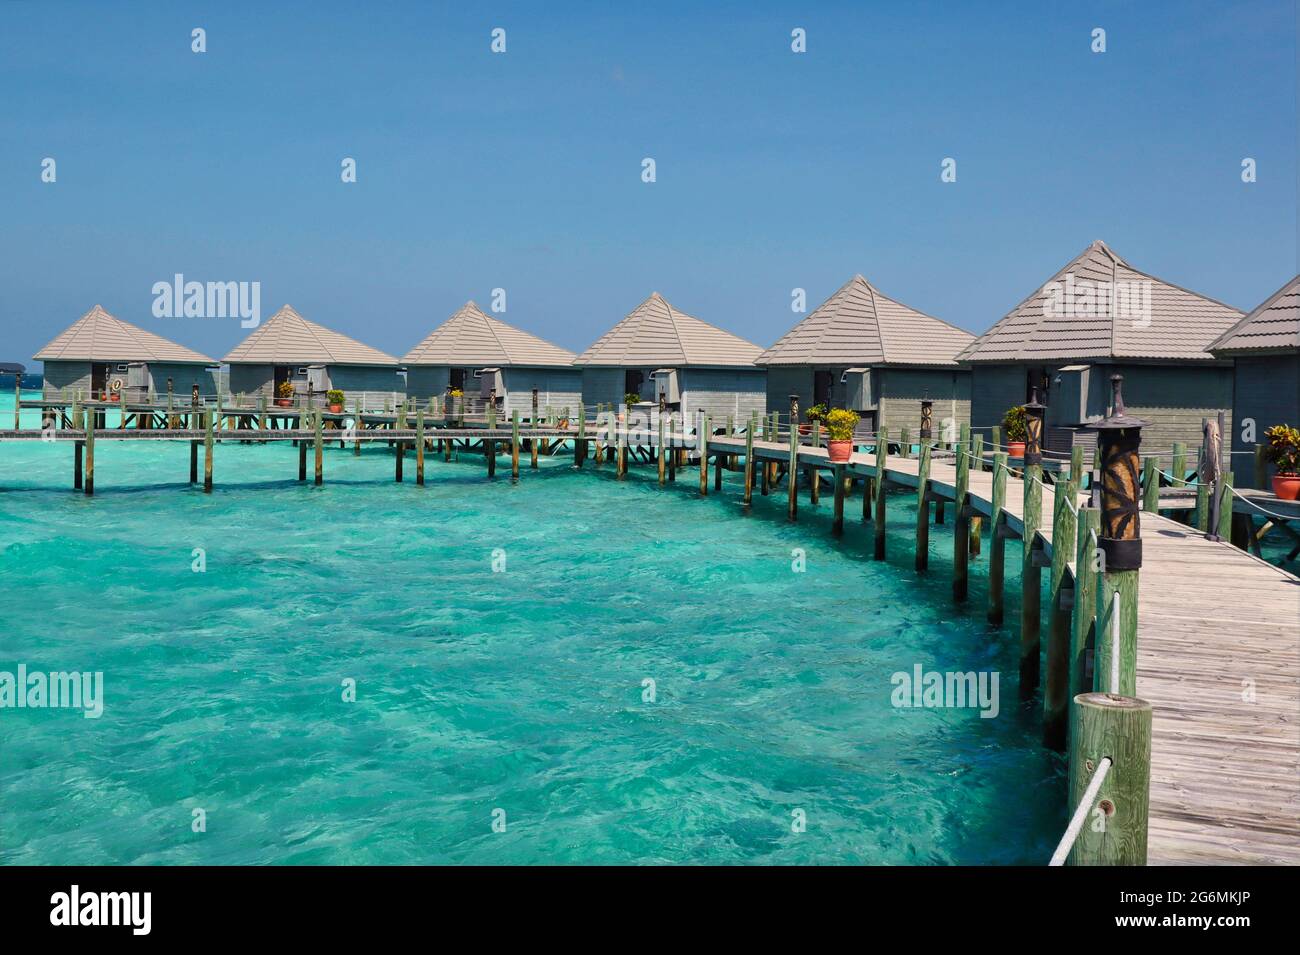 Idyllische Holzwasservilla mit Pier und Lagune im maledivischen Resort. Wunderschöner Overwater Bungalow und Türkisfarbener Ozean auf den Malediven. Stockfoto